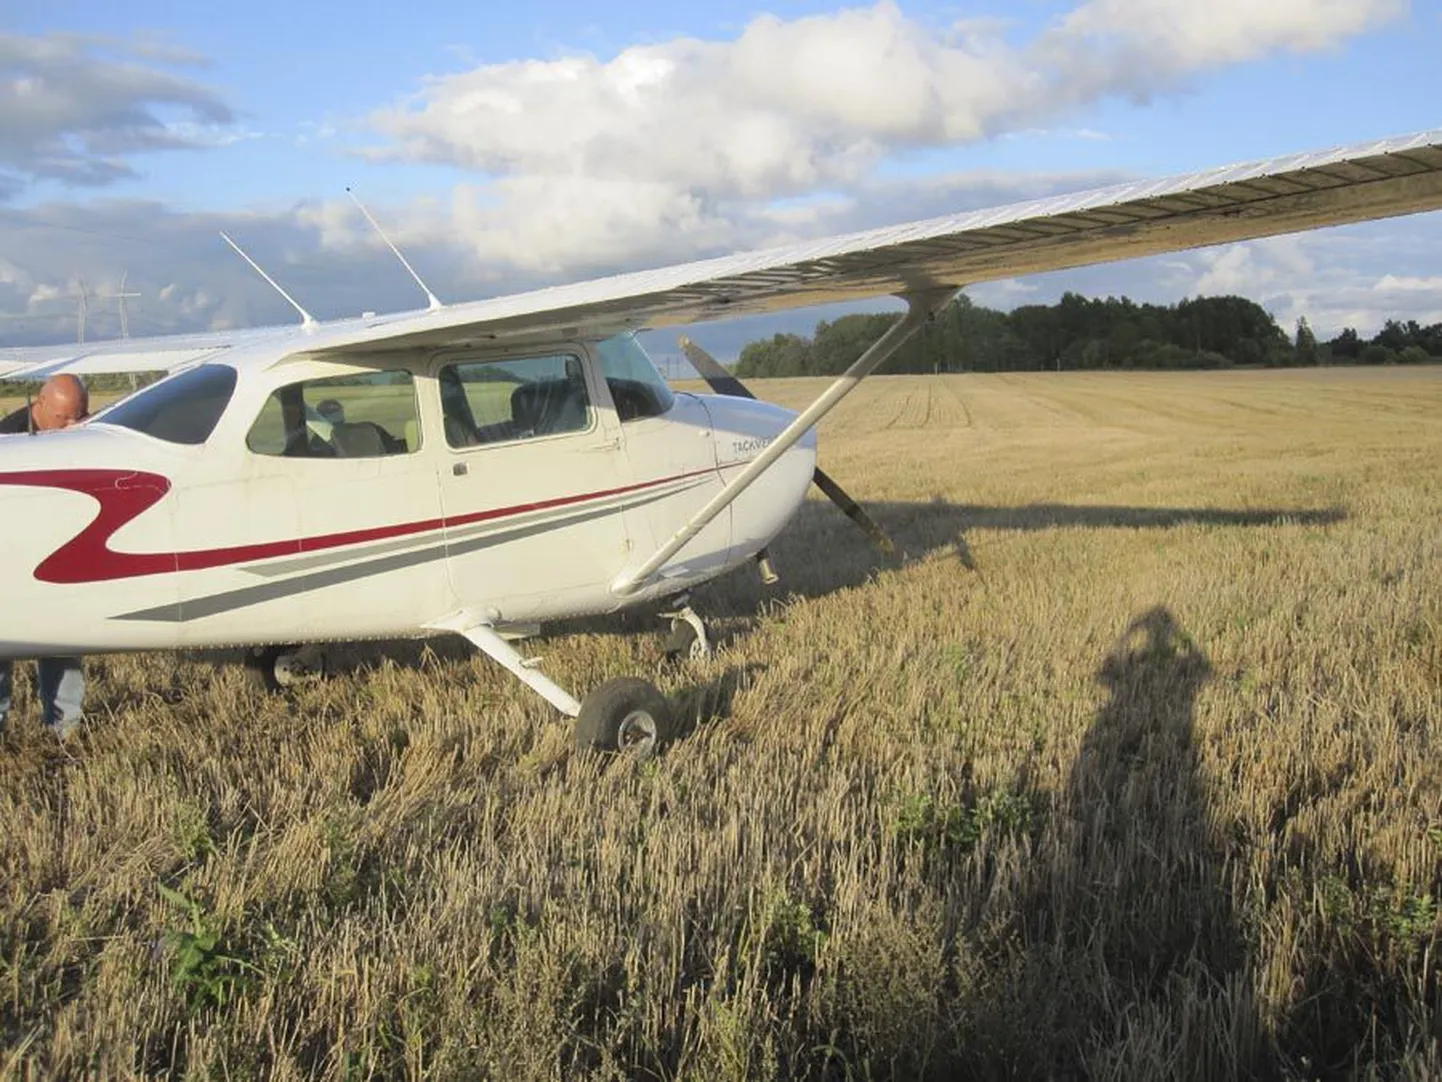 Hendrik Aguri lennuk maandus olude sunnil kõrrepõllul, aga kõik lõppes hästi.